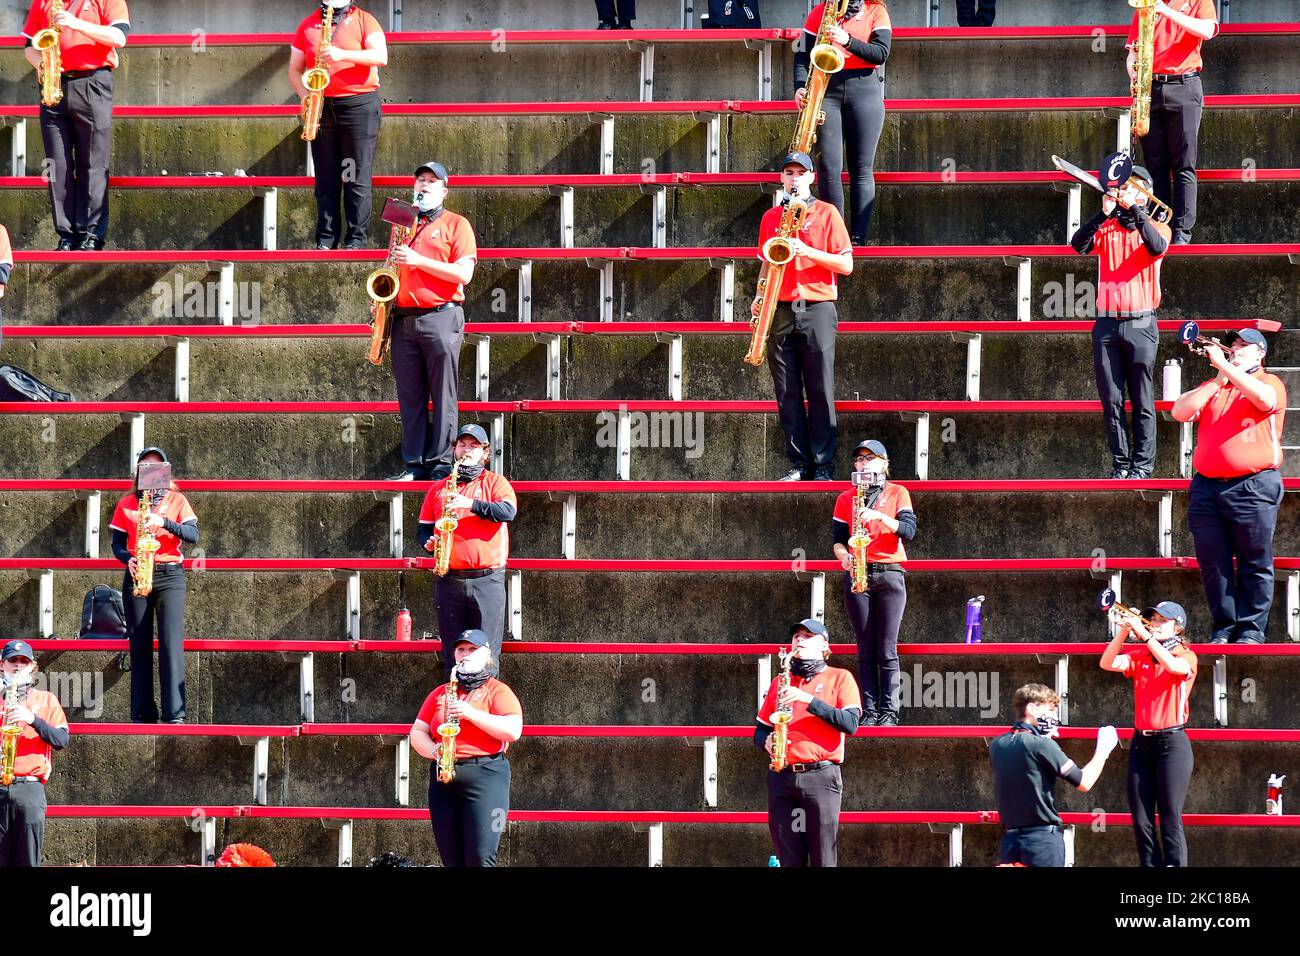 La band dell'Università di Cincinnati si esibisce durante una partita di football dell'università NCAA al Nippert Stadium tra l'Università di Cincinnati Bearcats e l'Università della Florida del Sud. Cincinnati sconfisse la USF 28-7. Sabato 3rd ottobre 2020 a Cincinnati, Ohio, Stati Uniti. (Foto di Jason Whitman/NurPhoto) Foto Stock